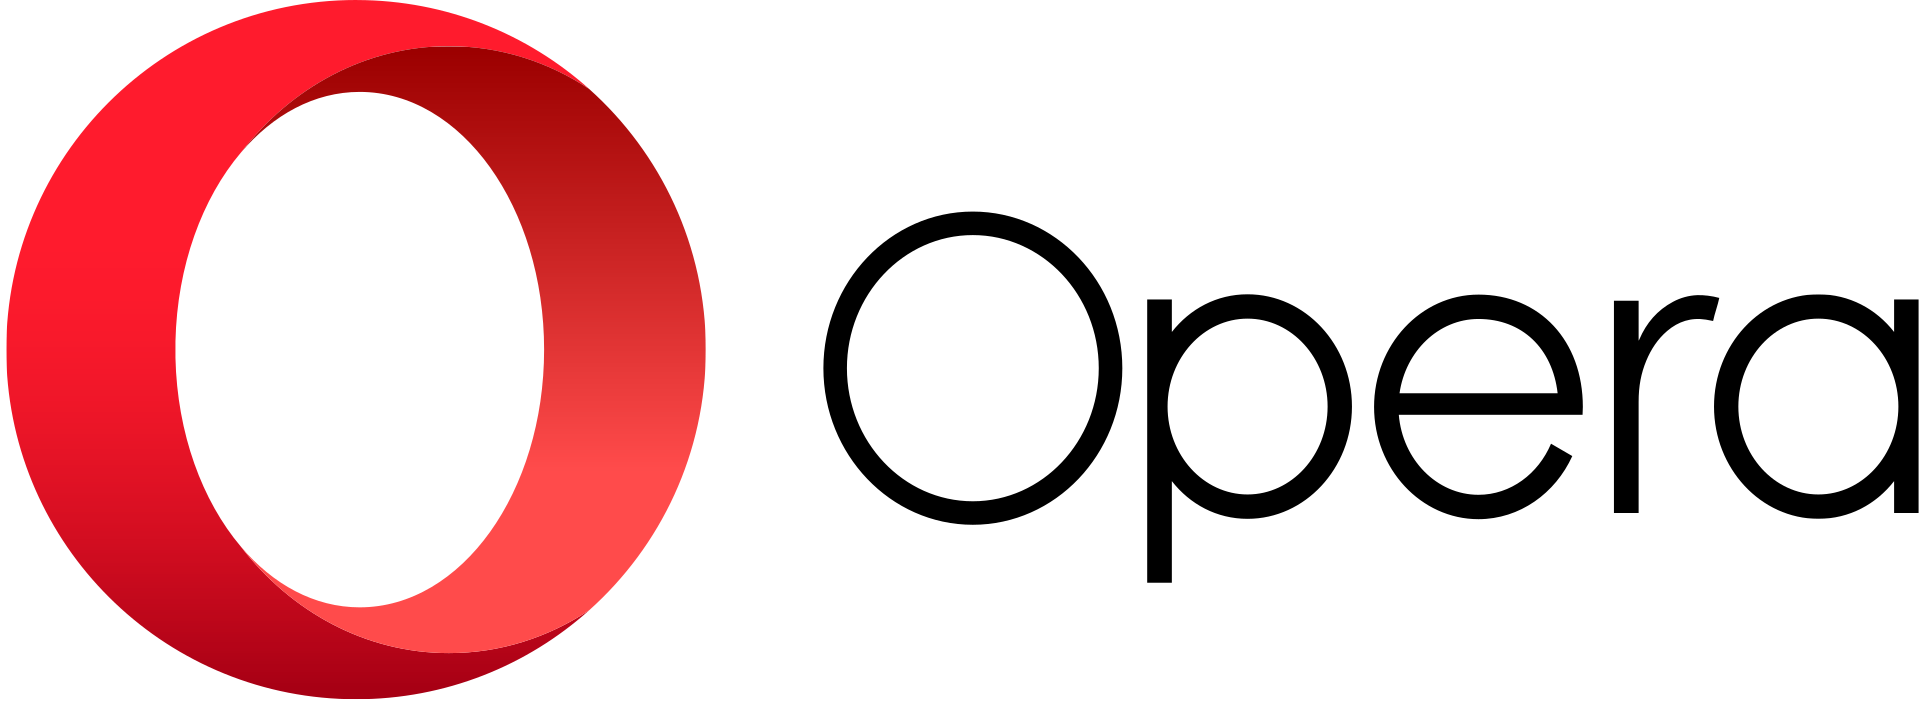 Логотип программы Opera